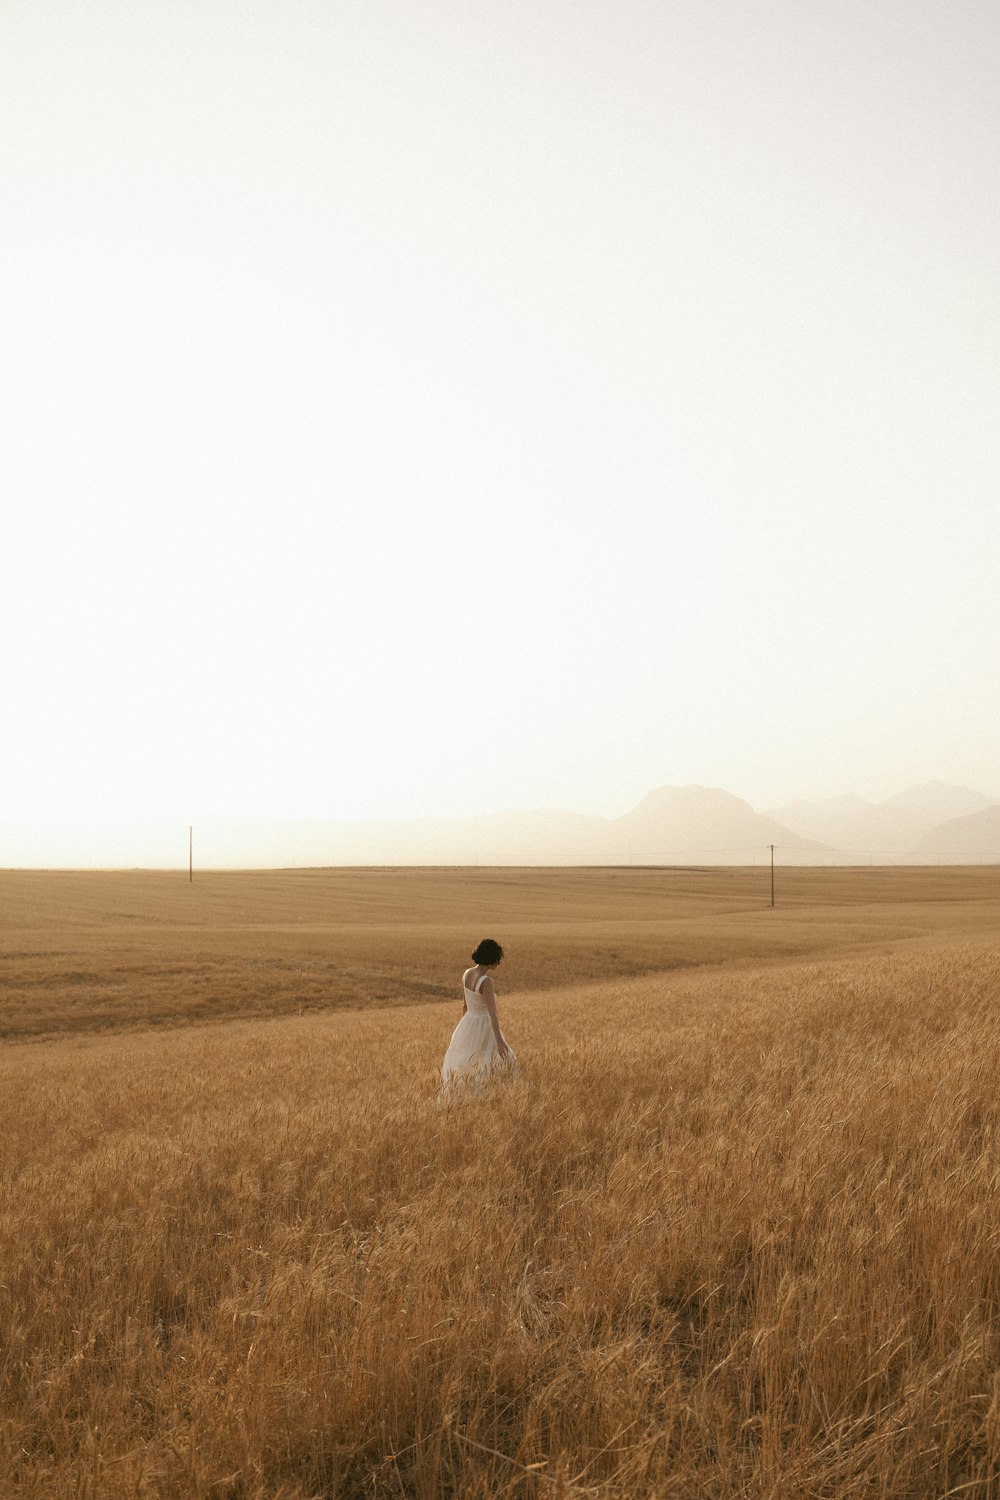 Eine Person in einem weißen Kleid, die auf einem Feld mit hohem Gras steht